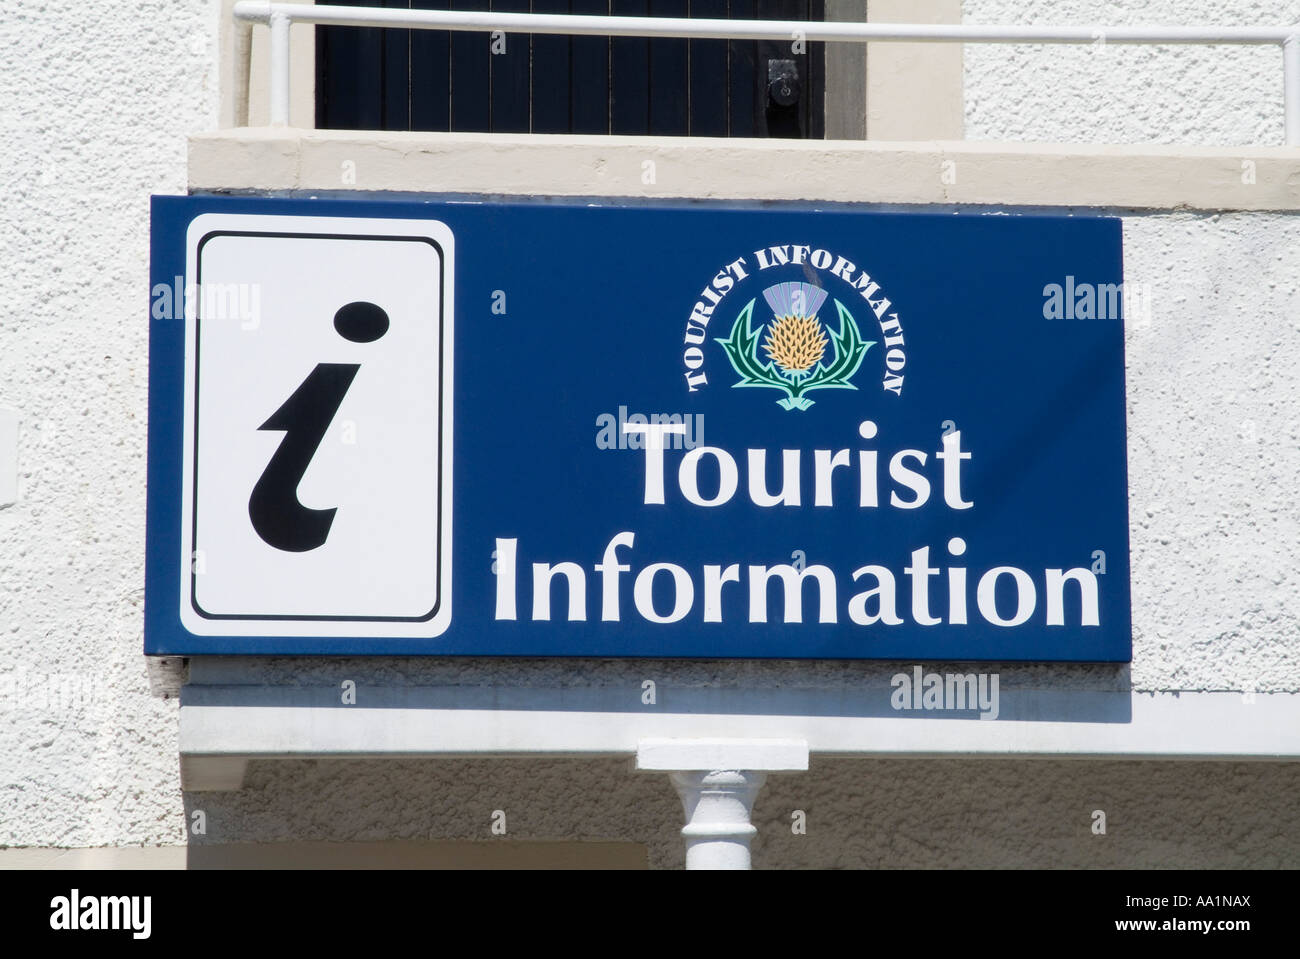 dh informations touristiques TOURISME IFOP VisitScotland office du tourisme panneau Anstruther visite écosse symbole Banque D'Images